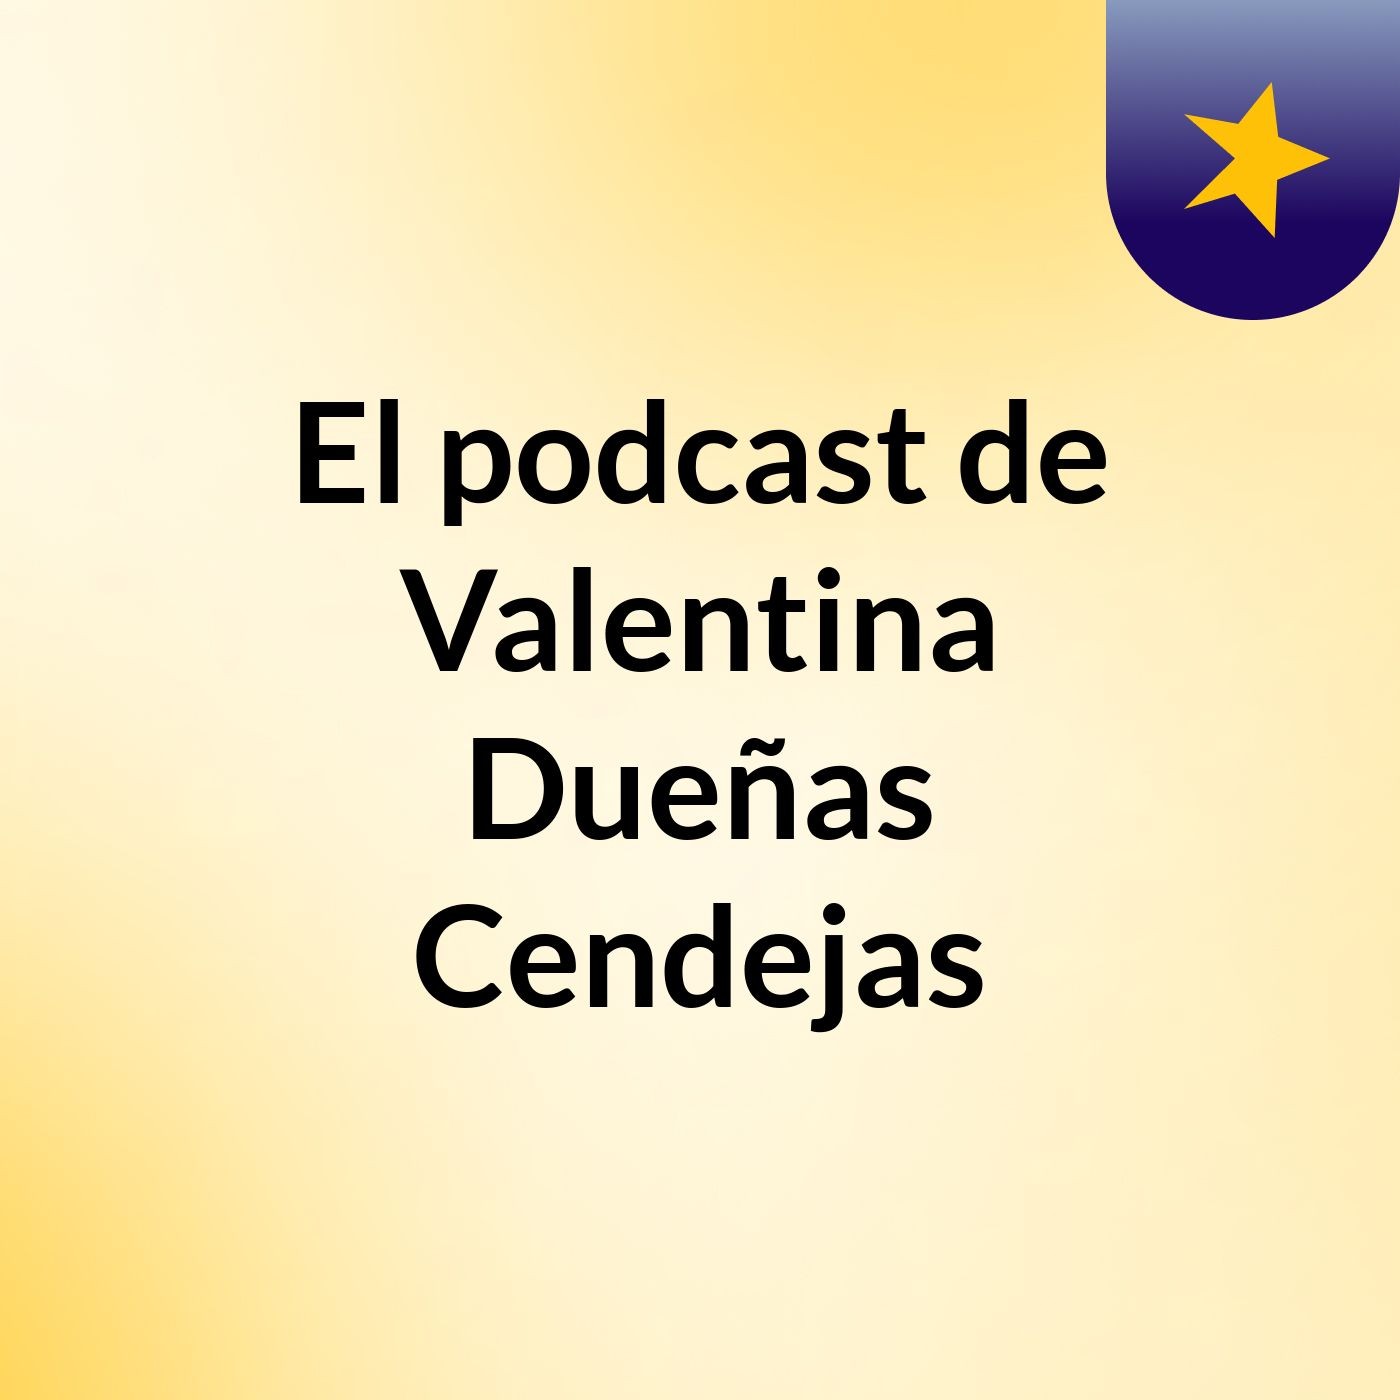 El podcast de Valentina Dueñas Cendejas